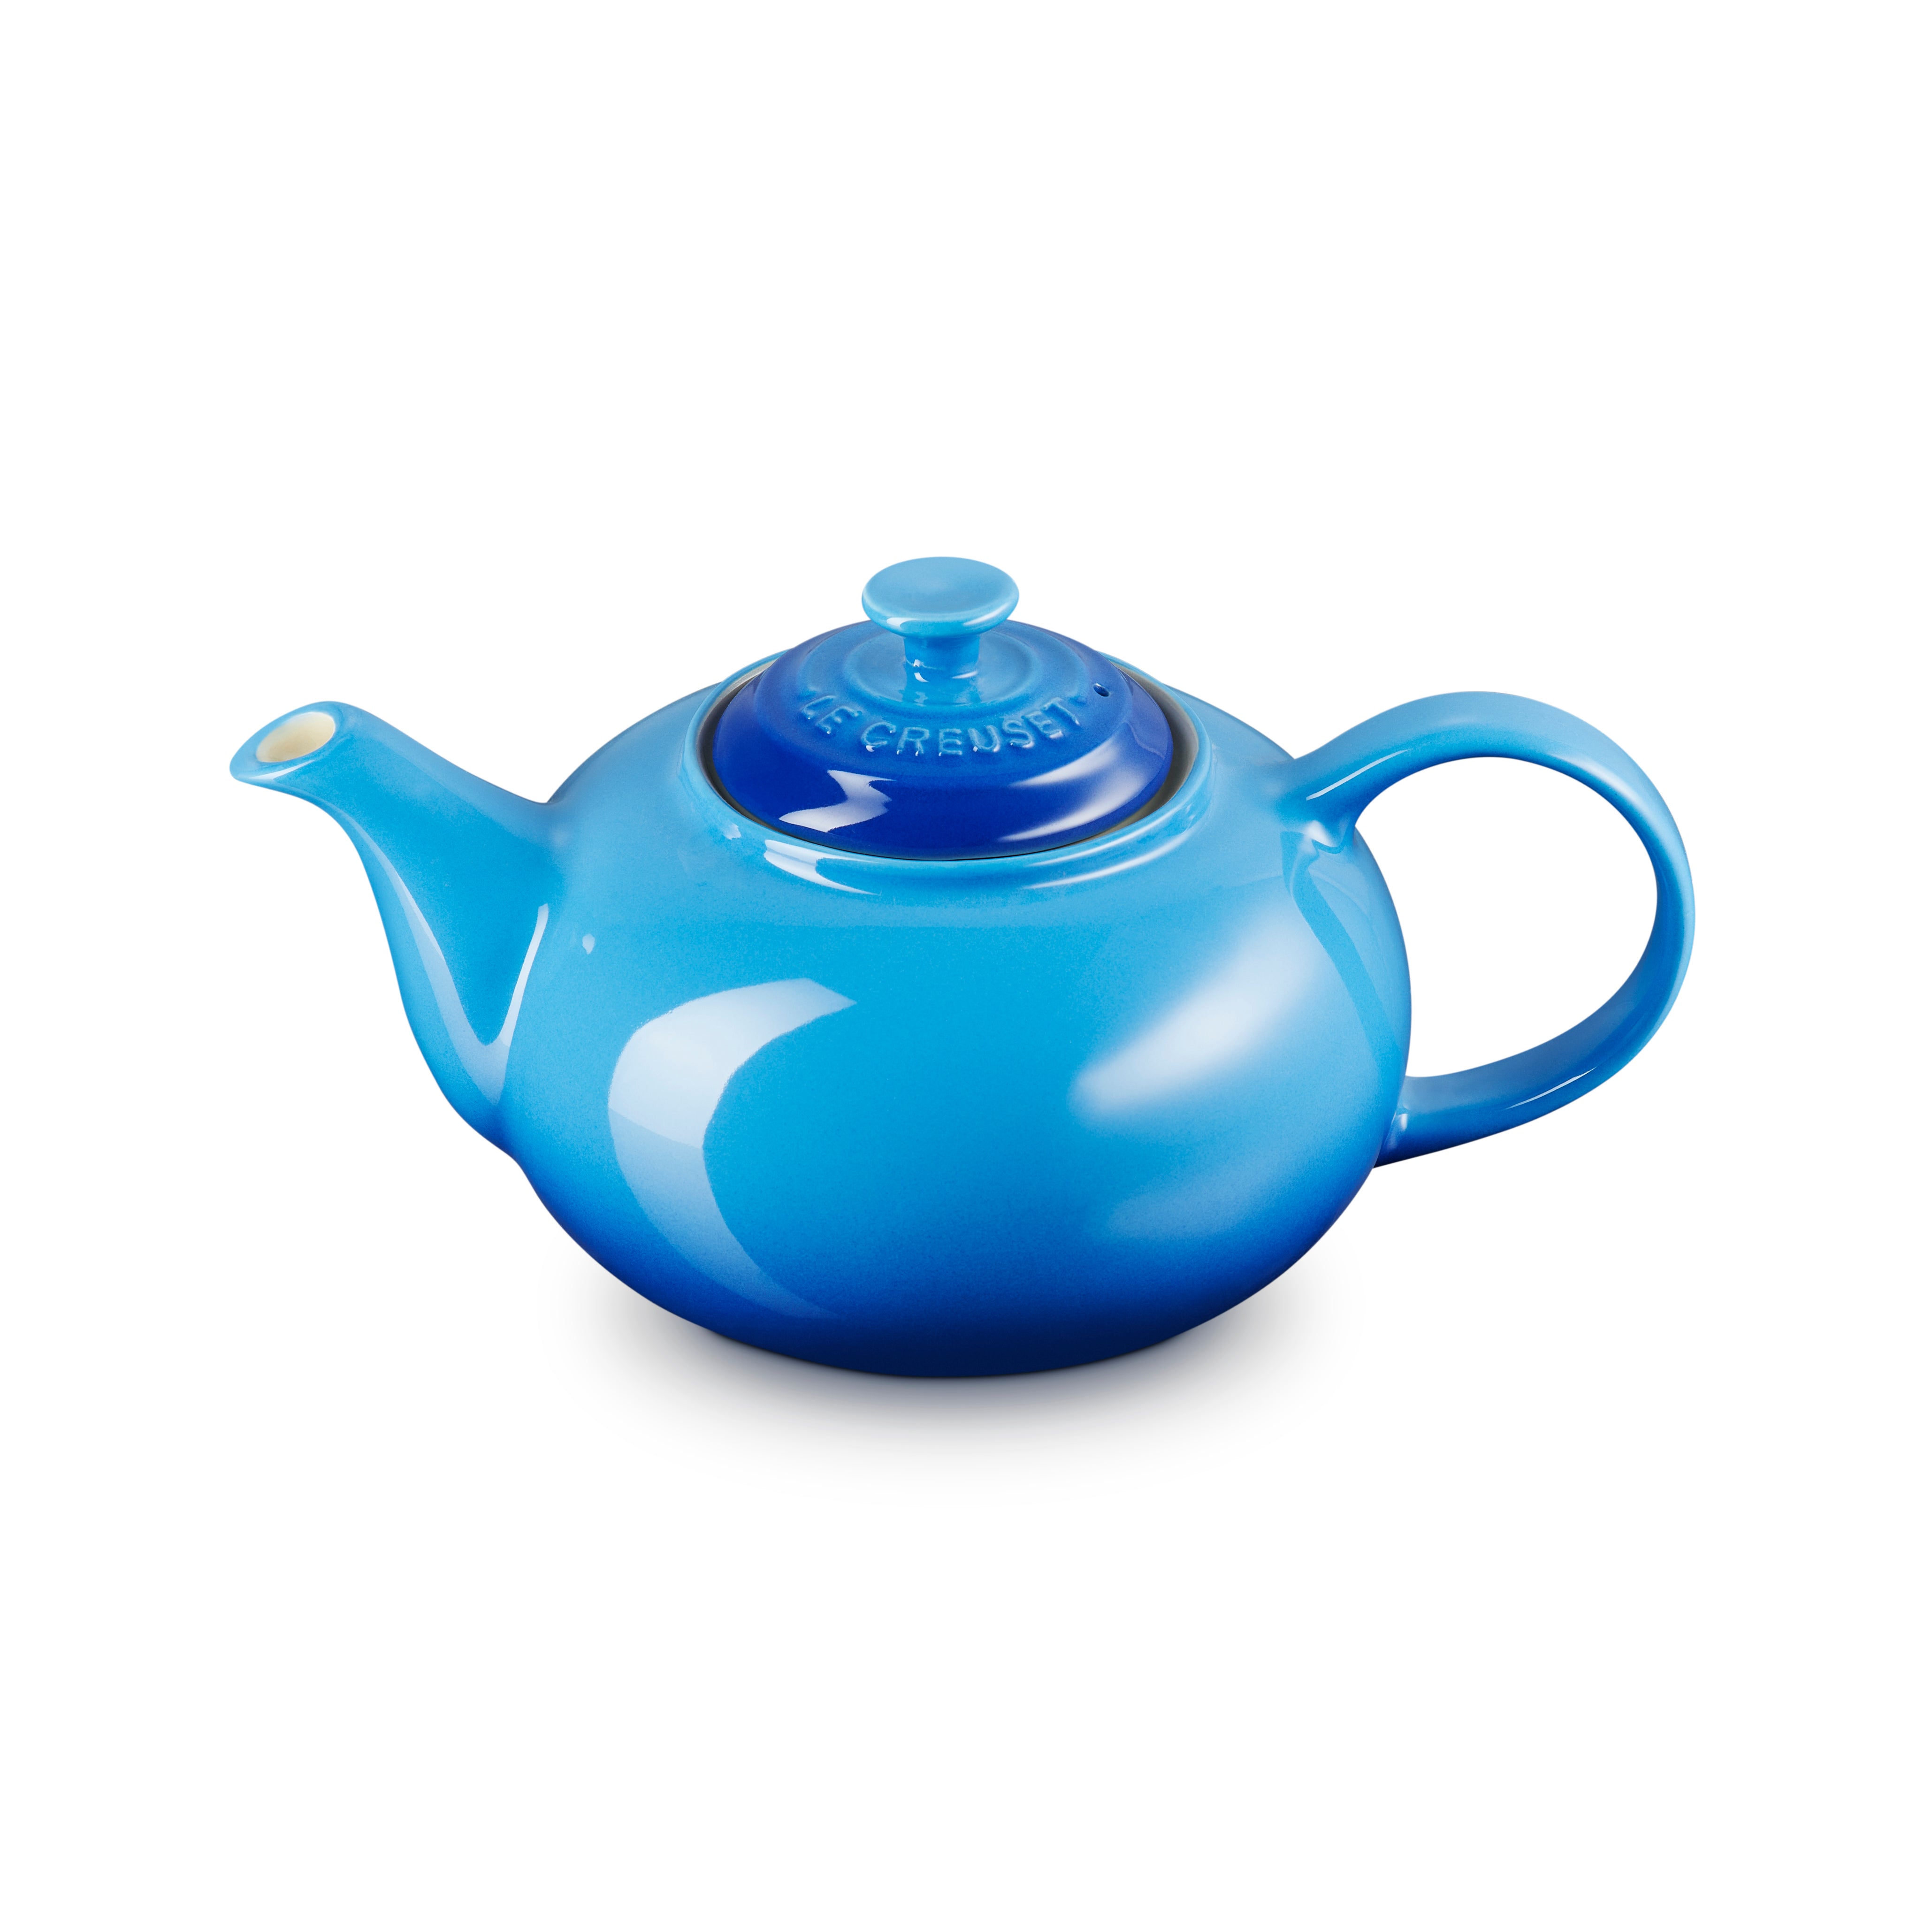 Le Creuset Stoneware Classic Teapot 1.3L Azure